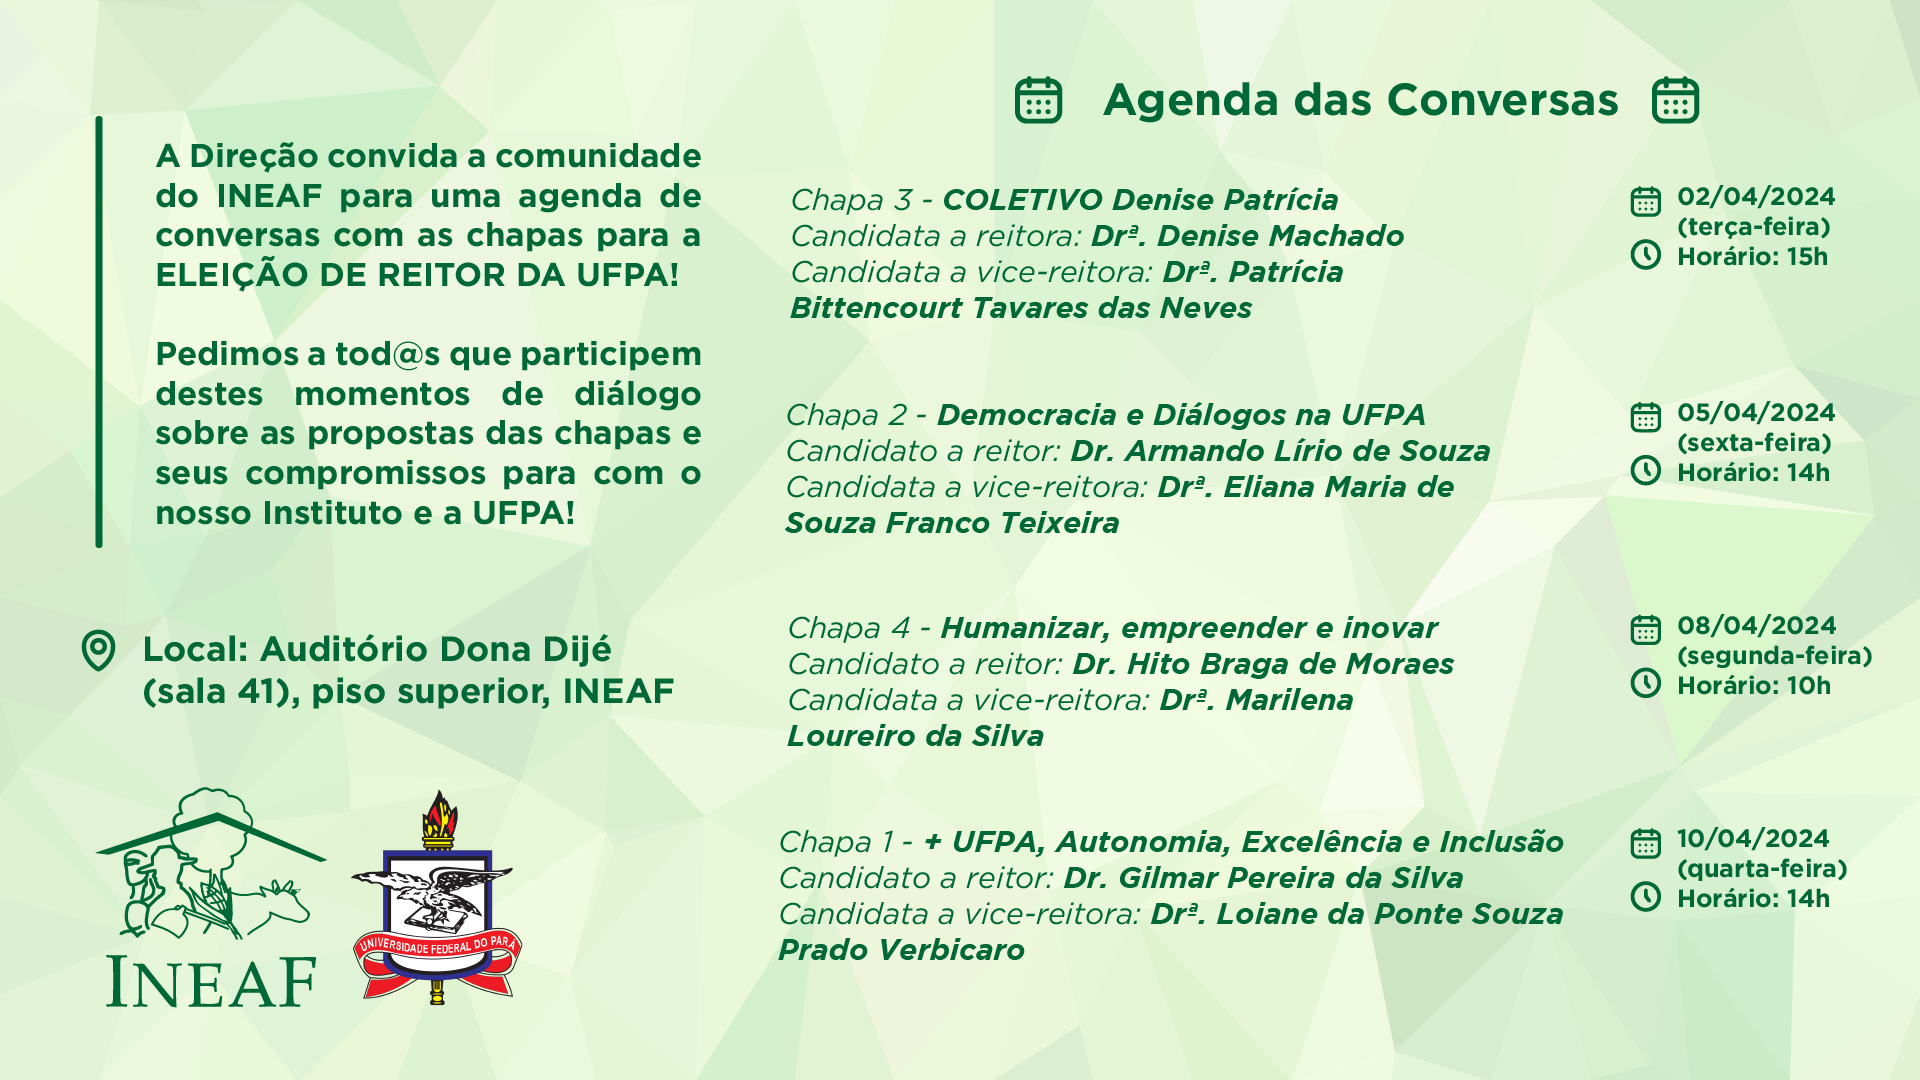 Agenda de conversas com chapas para a ELEIÇÃO DE REITOR DA UFPA